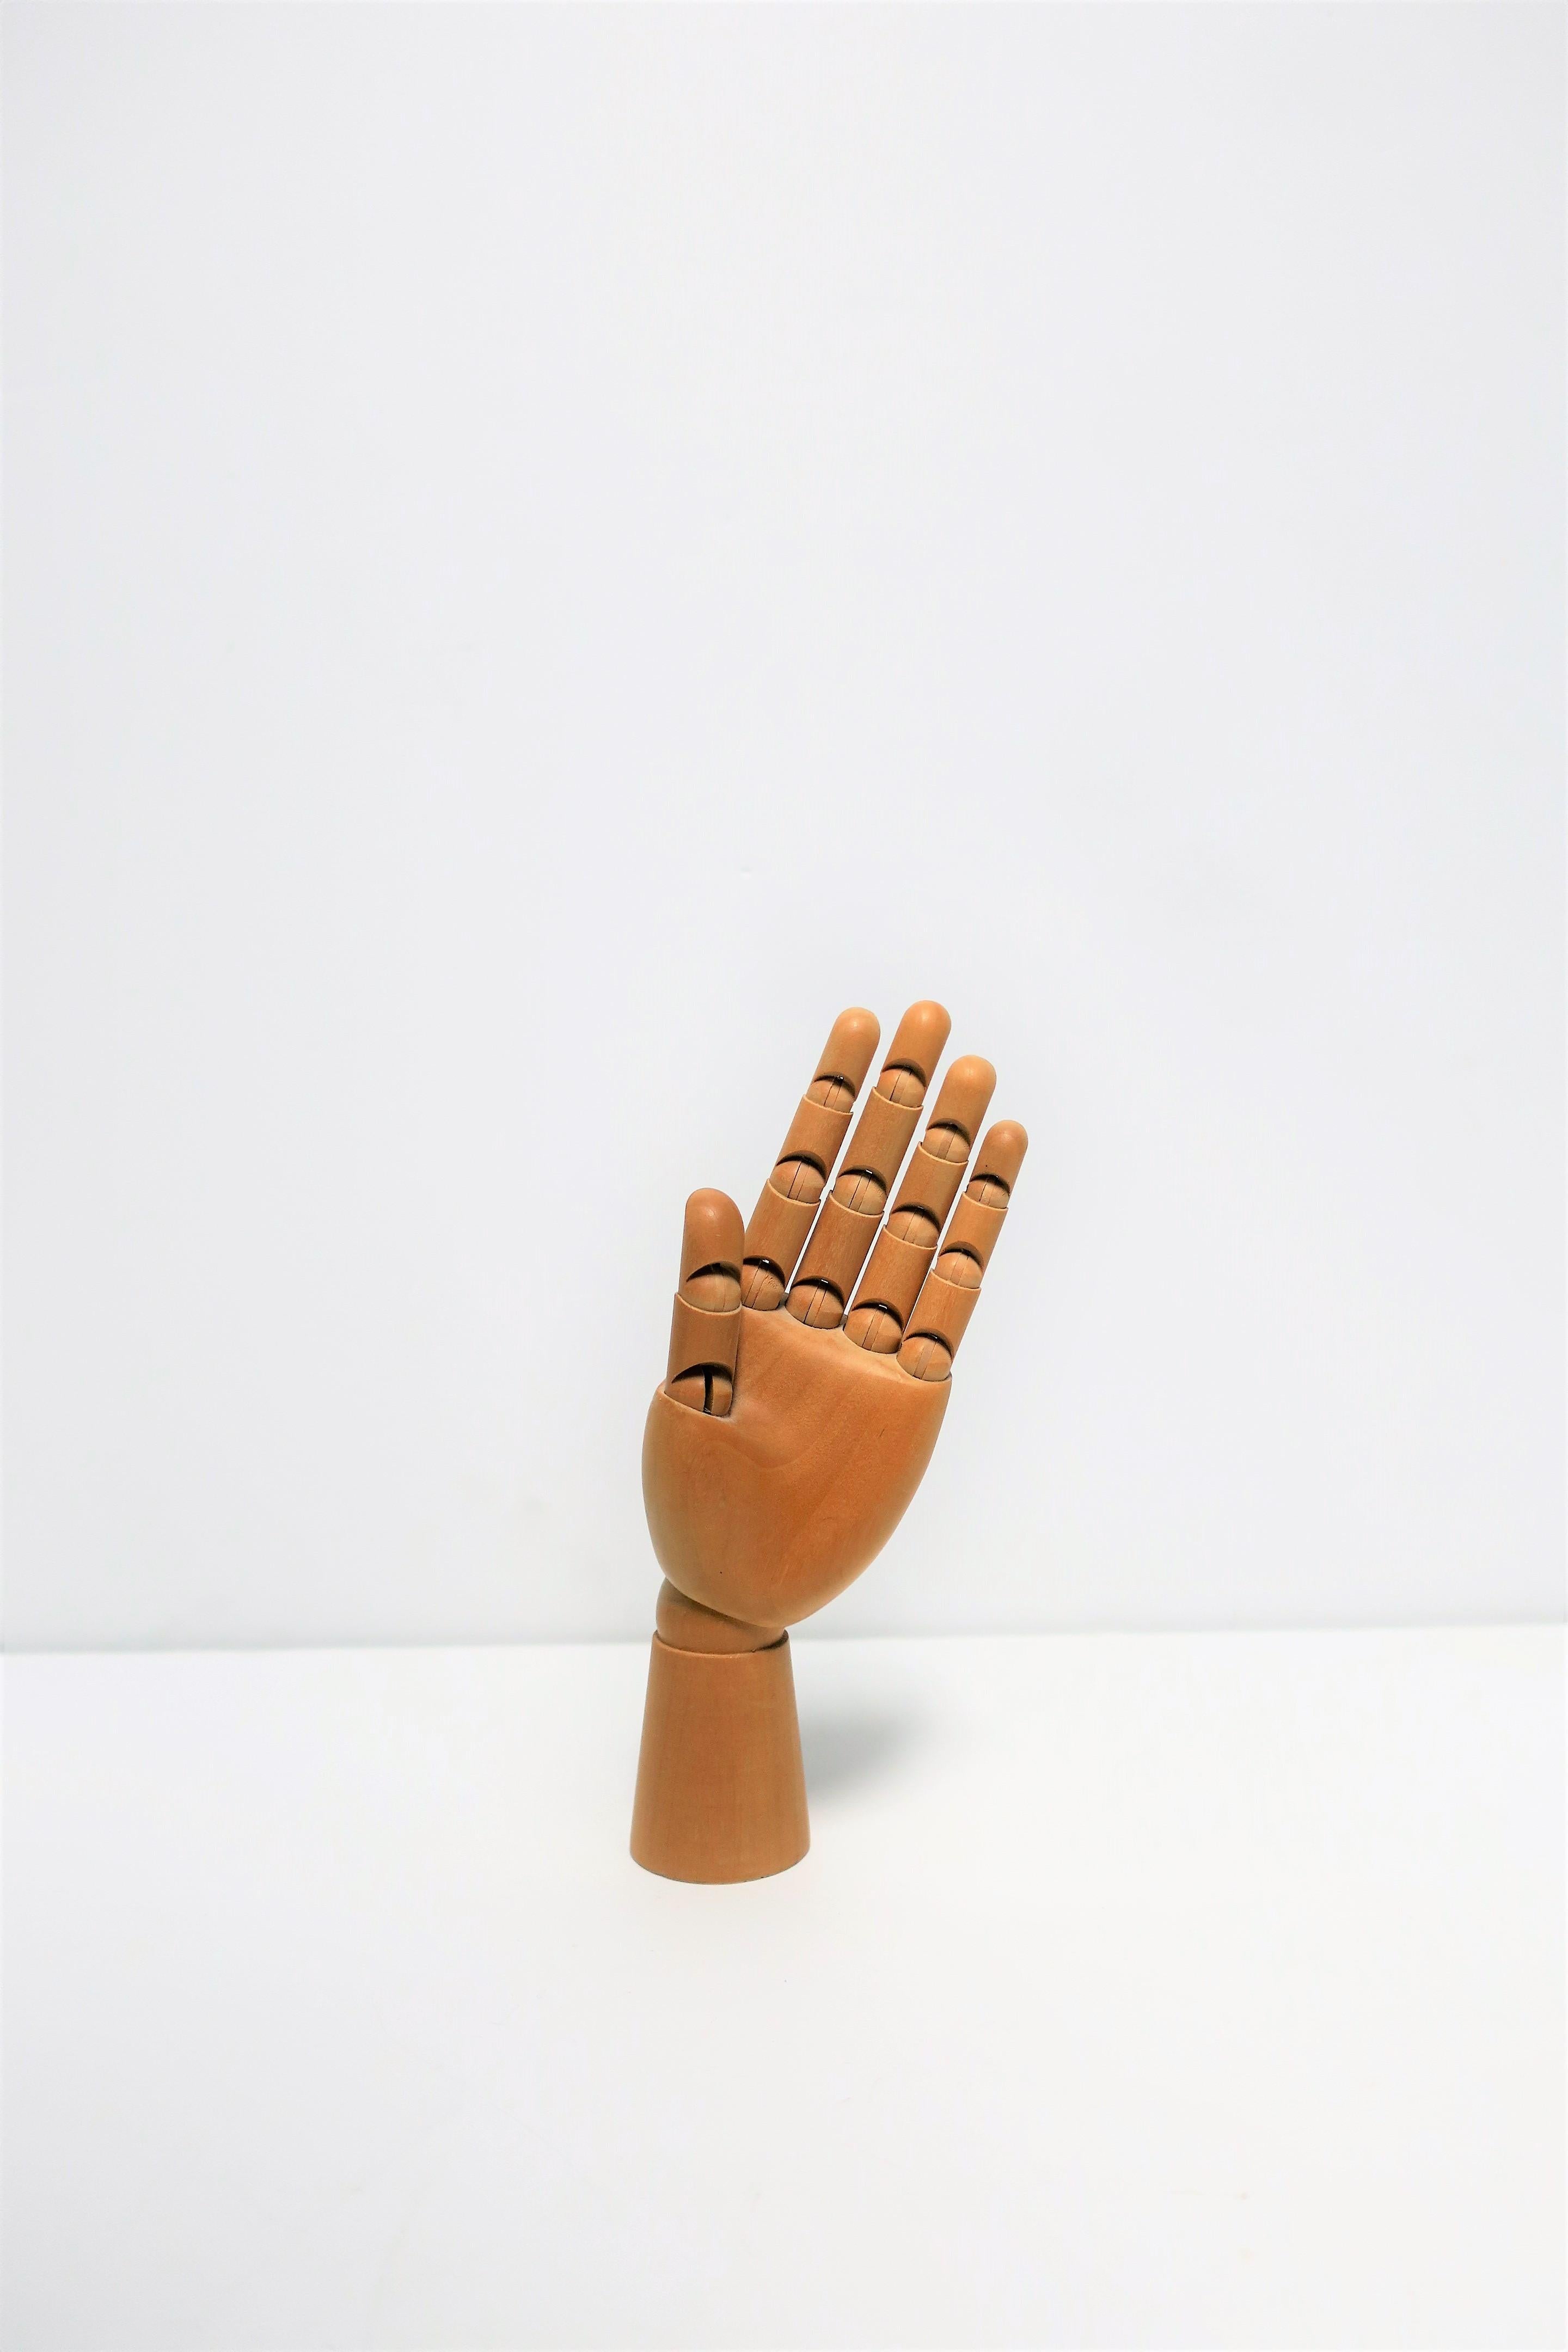 Articulating Wood Hand Sculpture Piece 1